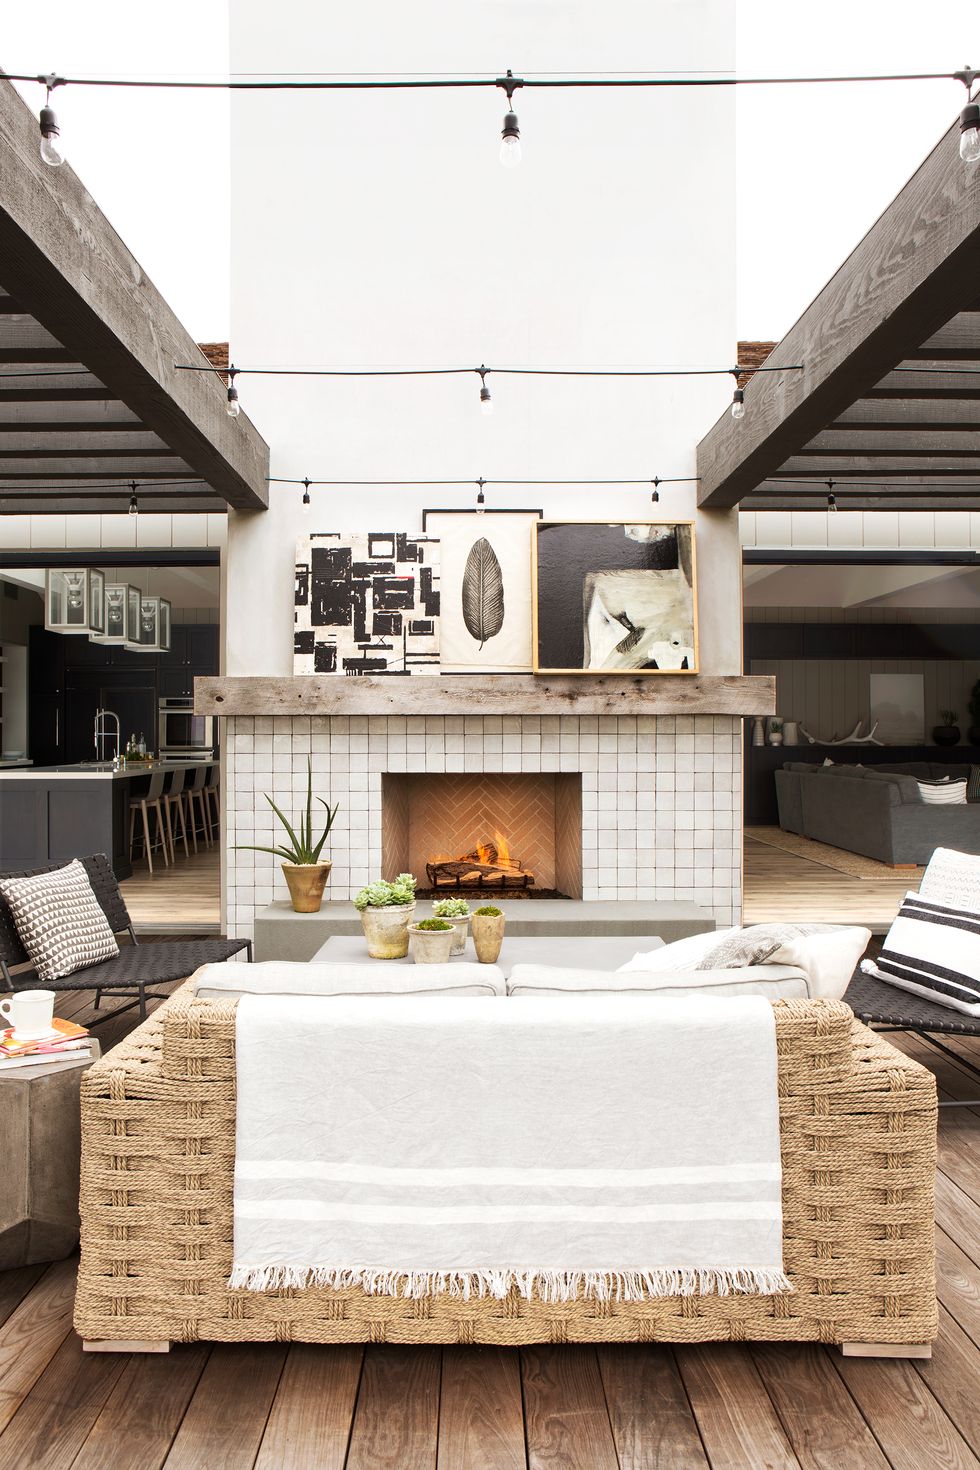 backyard pergola with fireplace